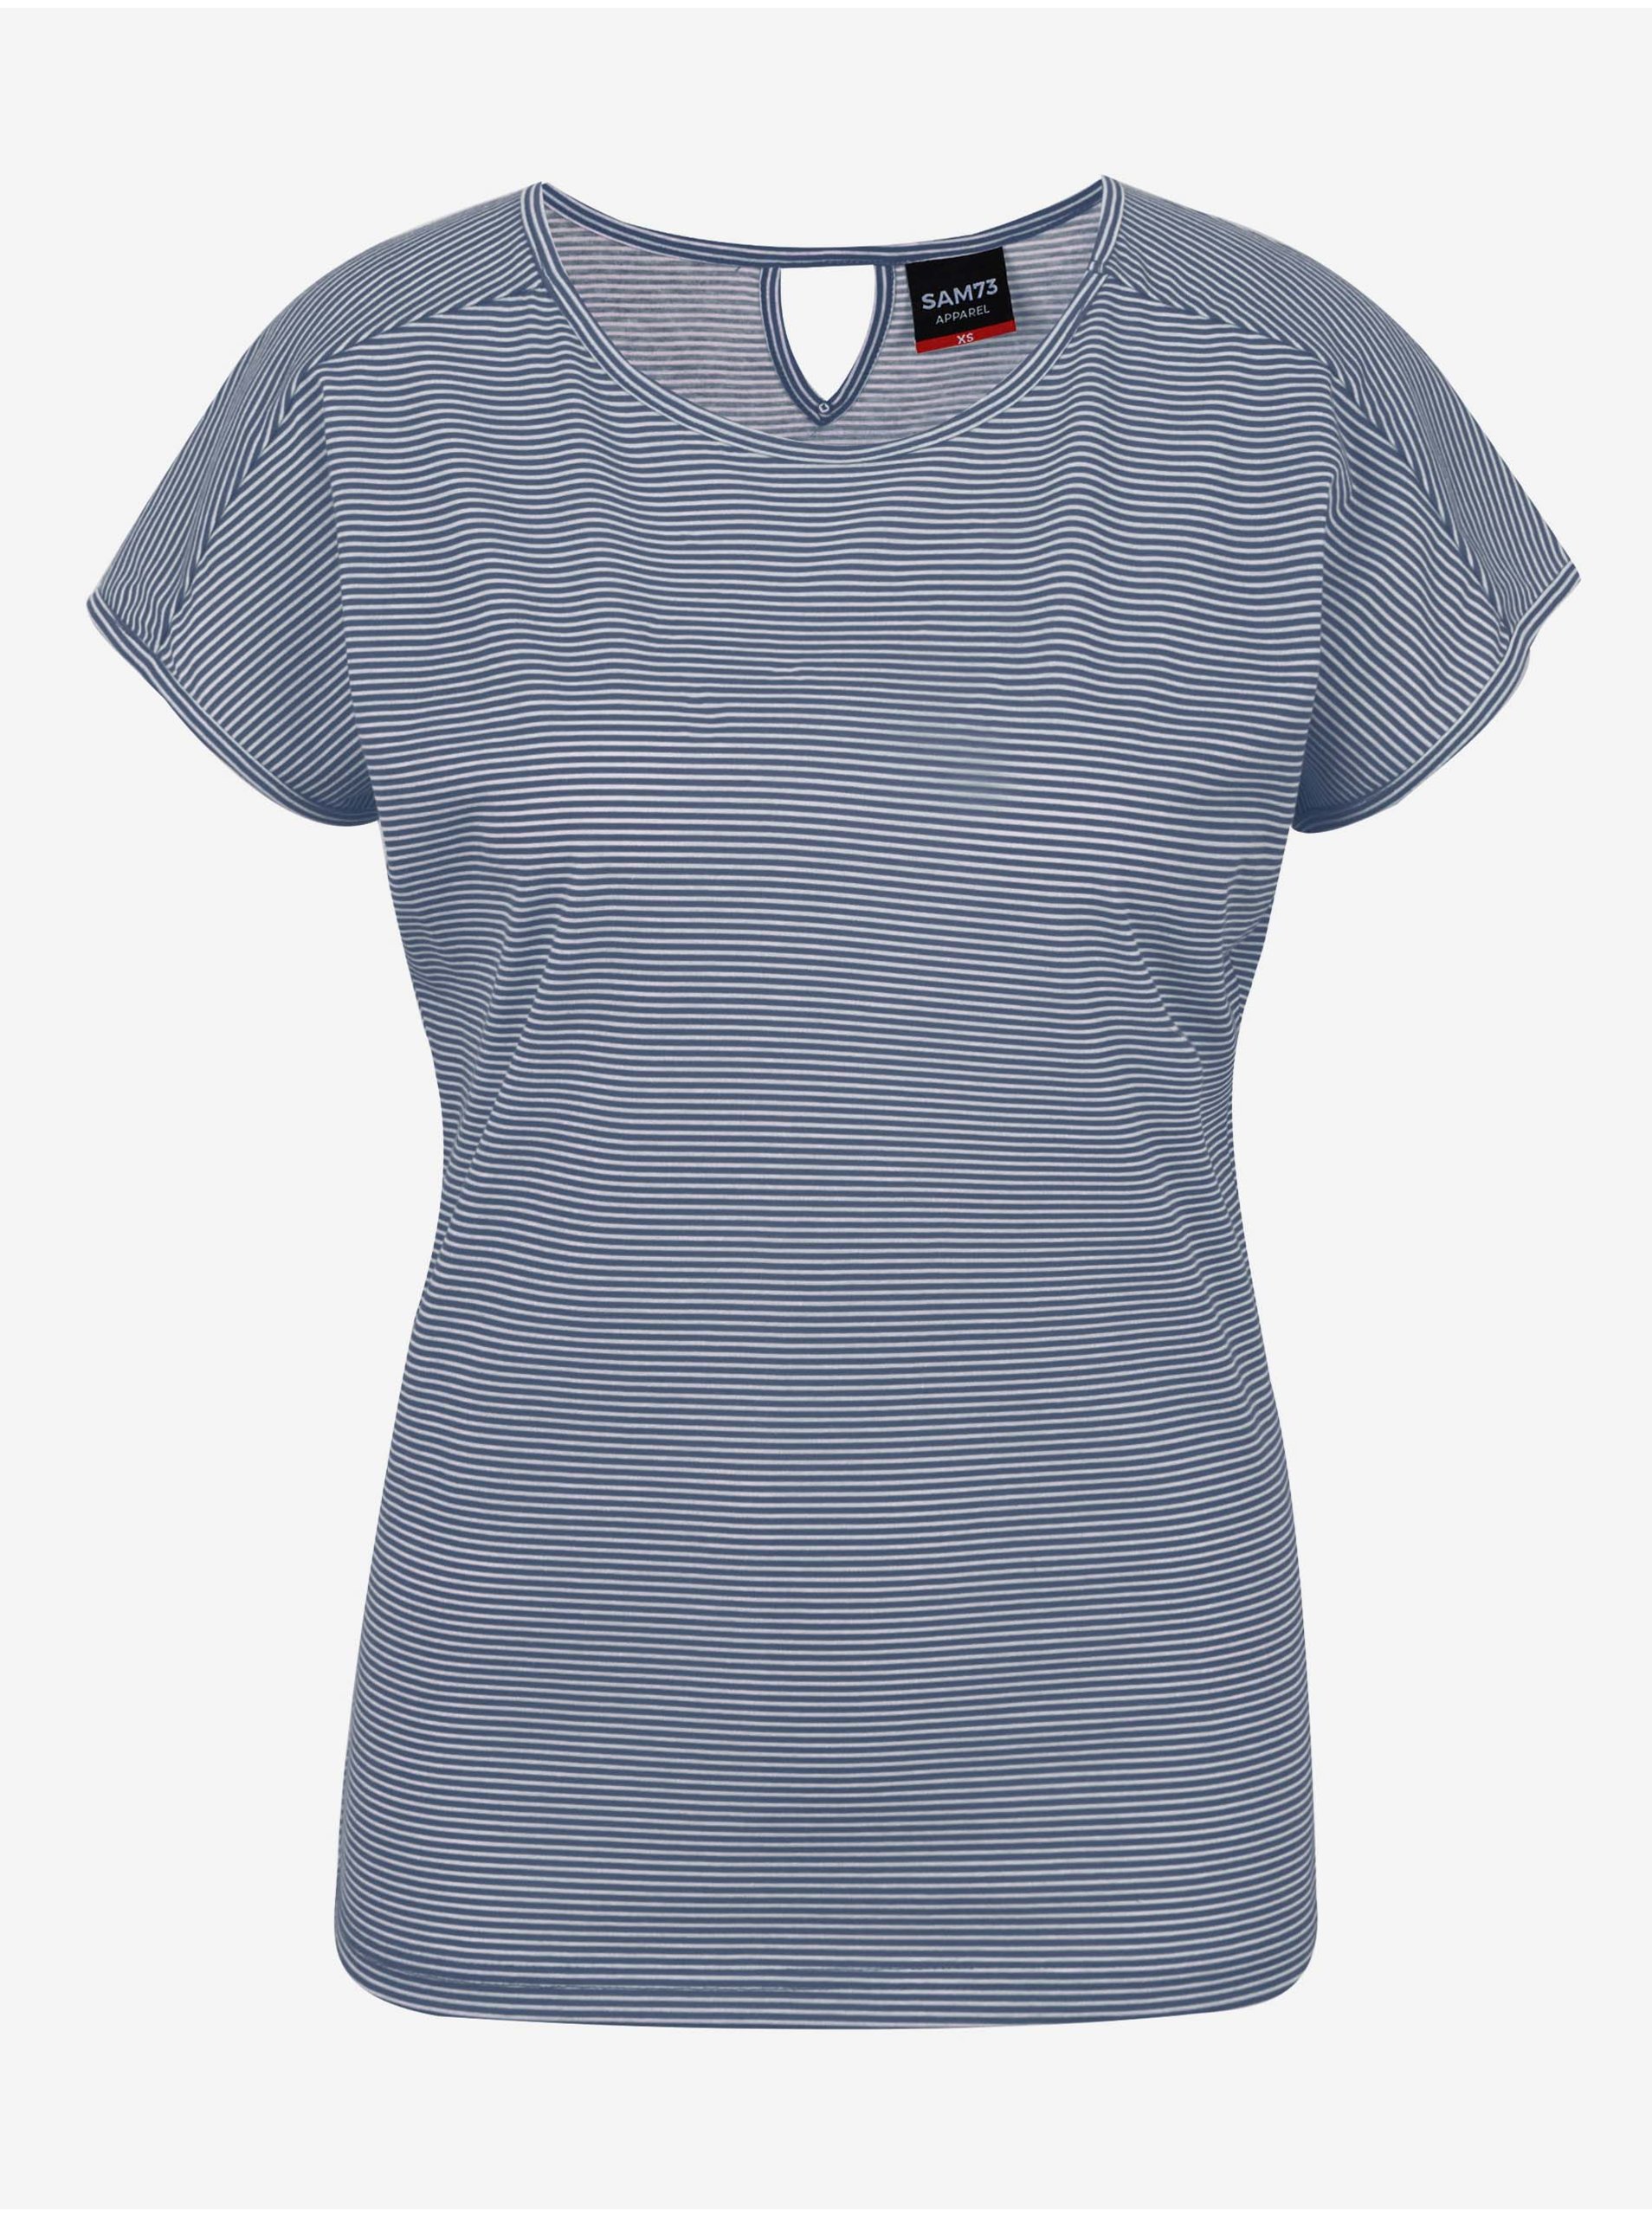 Lacno Modré dámske pruhované basic tričko SAM 73 Celeste